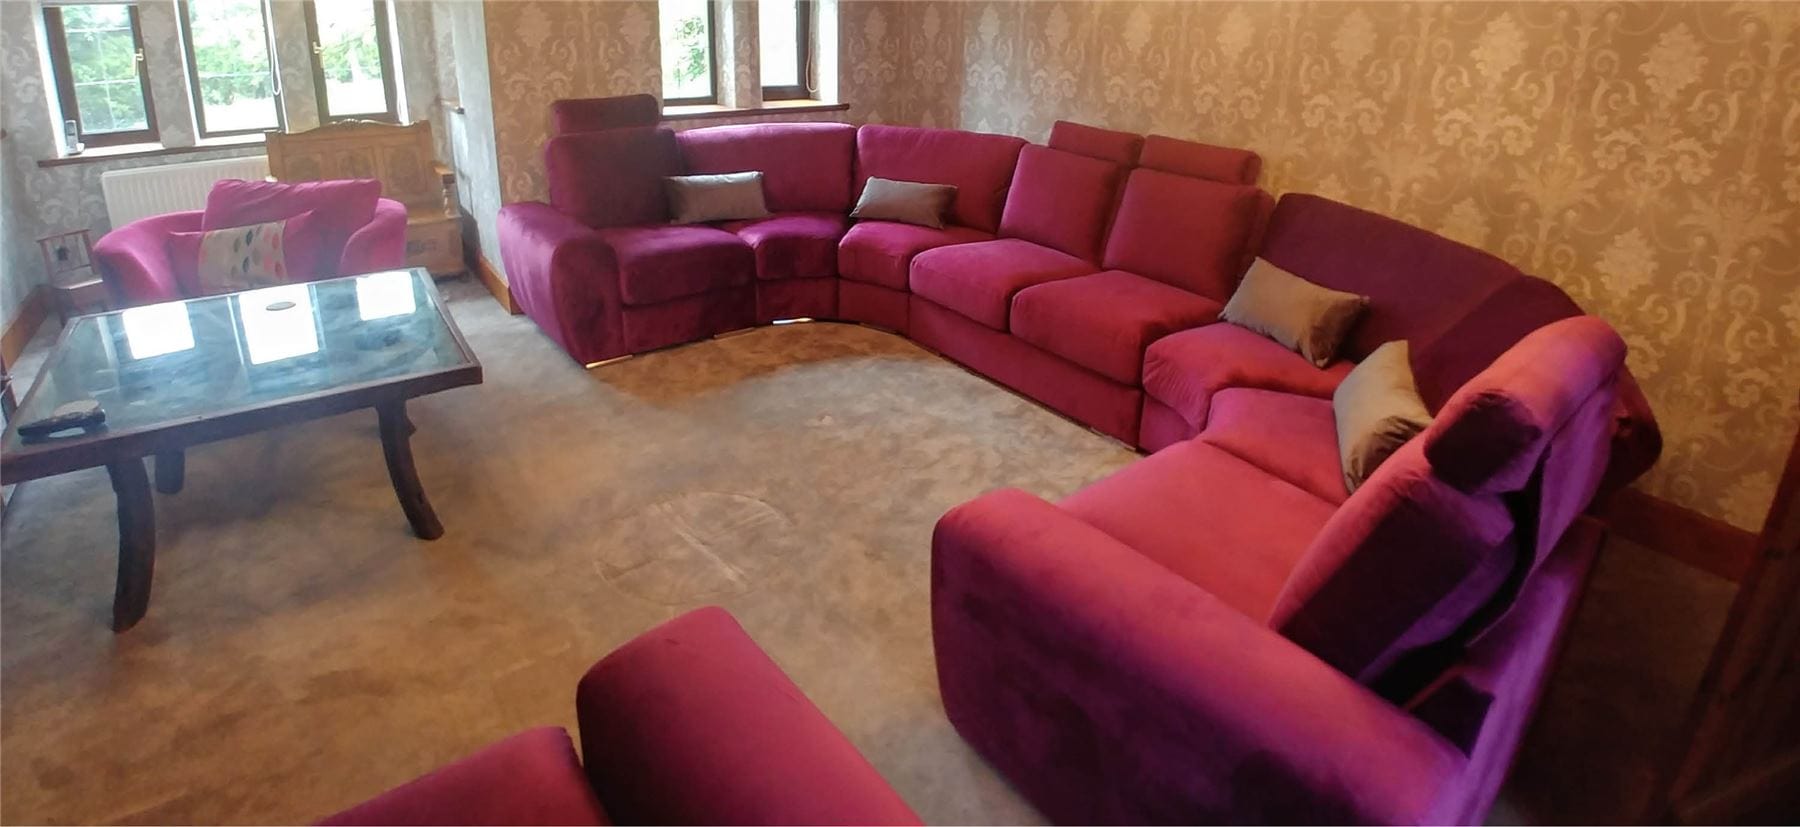 Quatropi Massive Modern Cinema U Shape Sofa Corner Group Headrests Grande 25